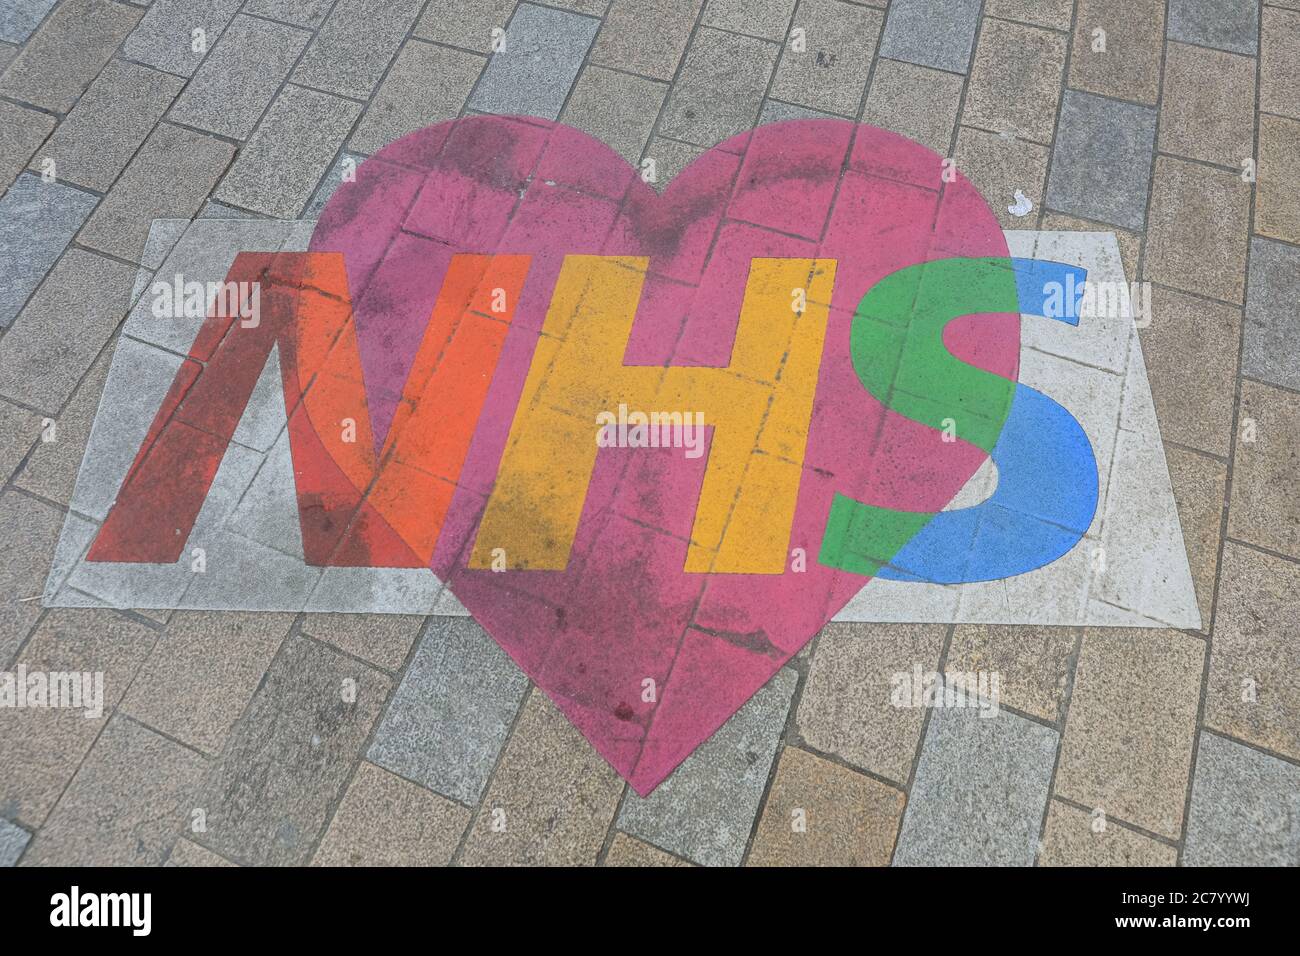 NHS Nathional Health Service logo con corazón en el pavimento en el centro de Londres, agradeciendo al NHS durante la crisis del coronavirus covid-19, Londres, Inglaterra Foto de stock